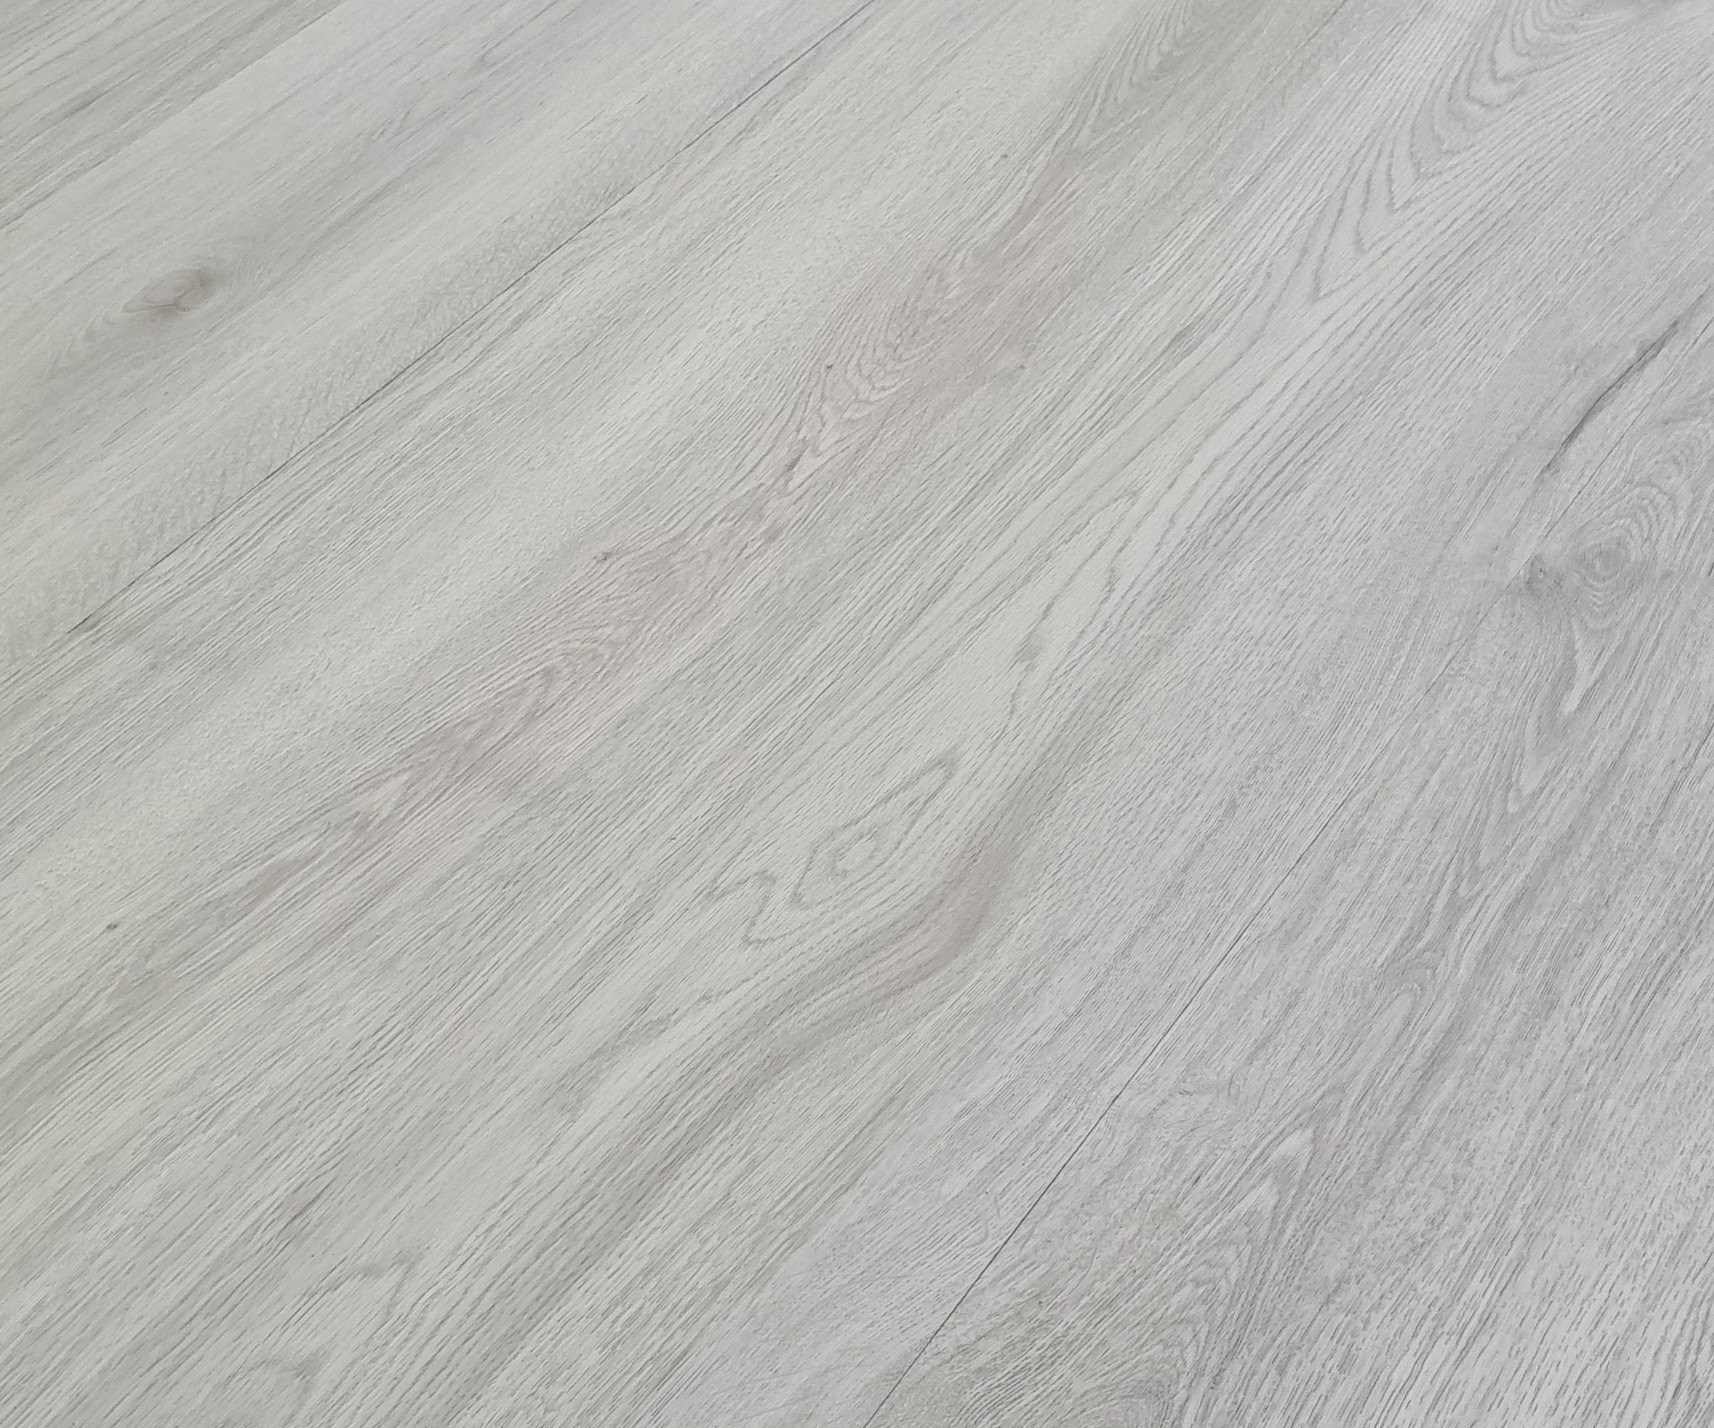 Podlaha vinylová lepená Home XL karakum oak light grey KPP